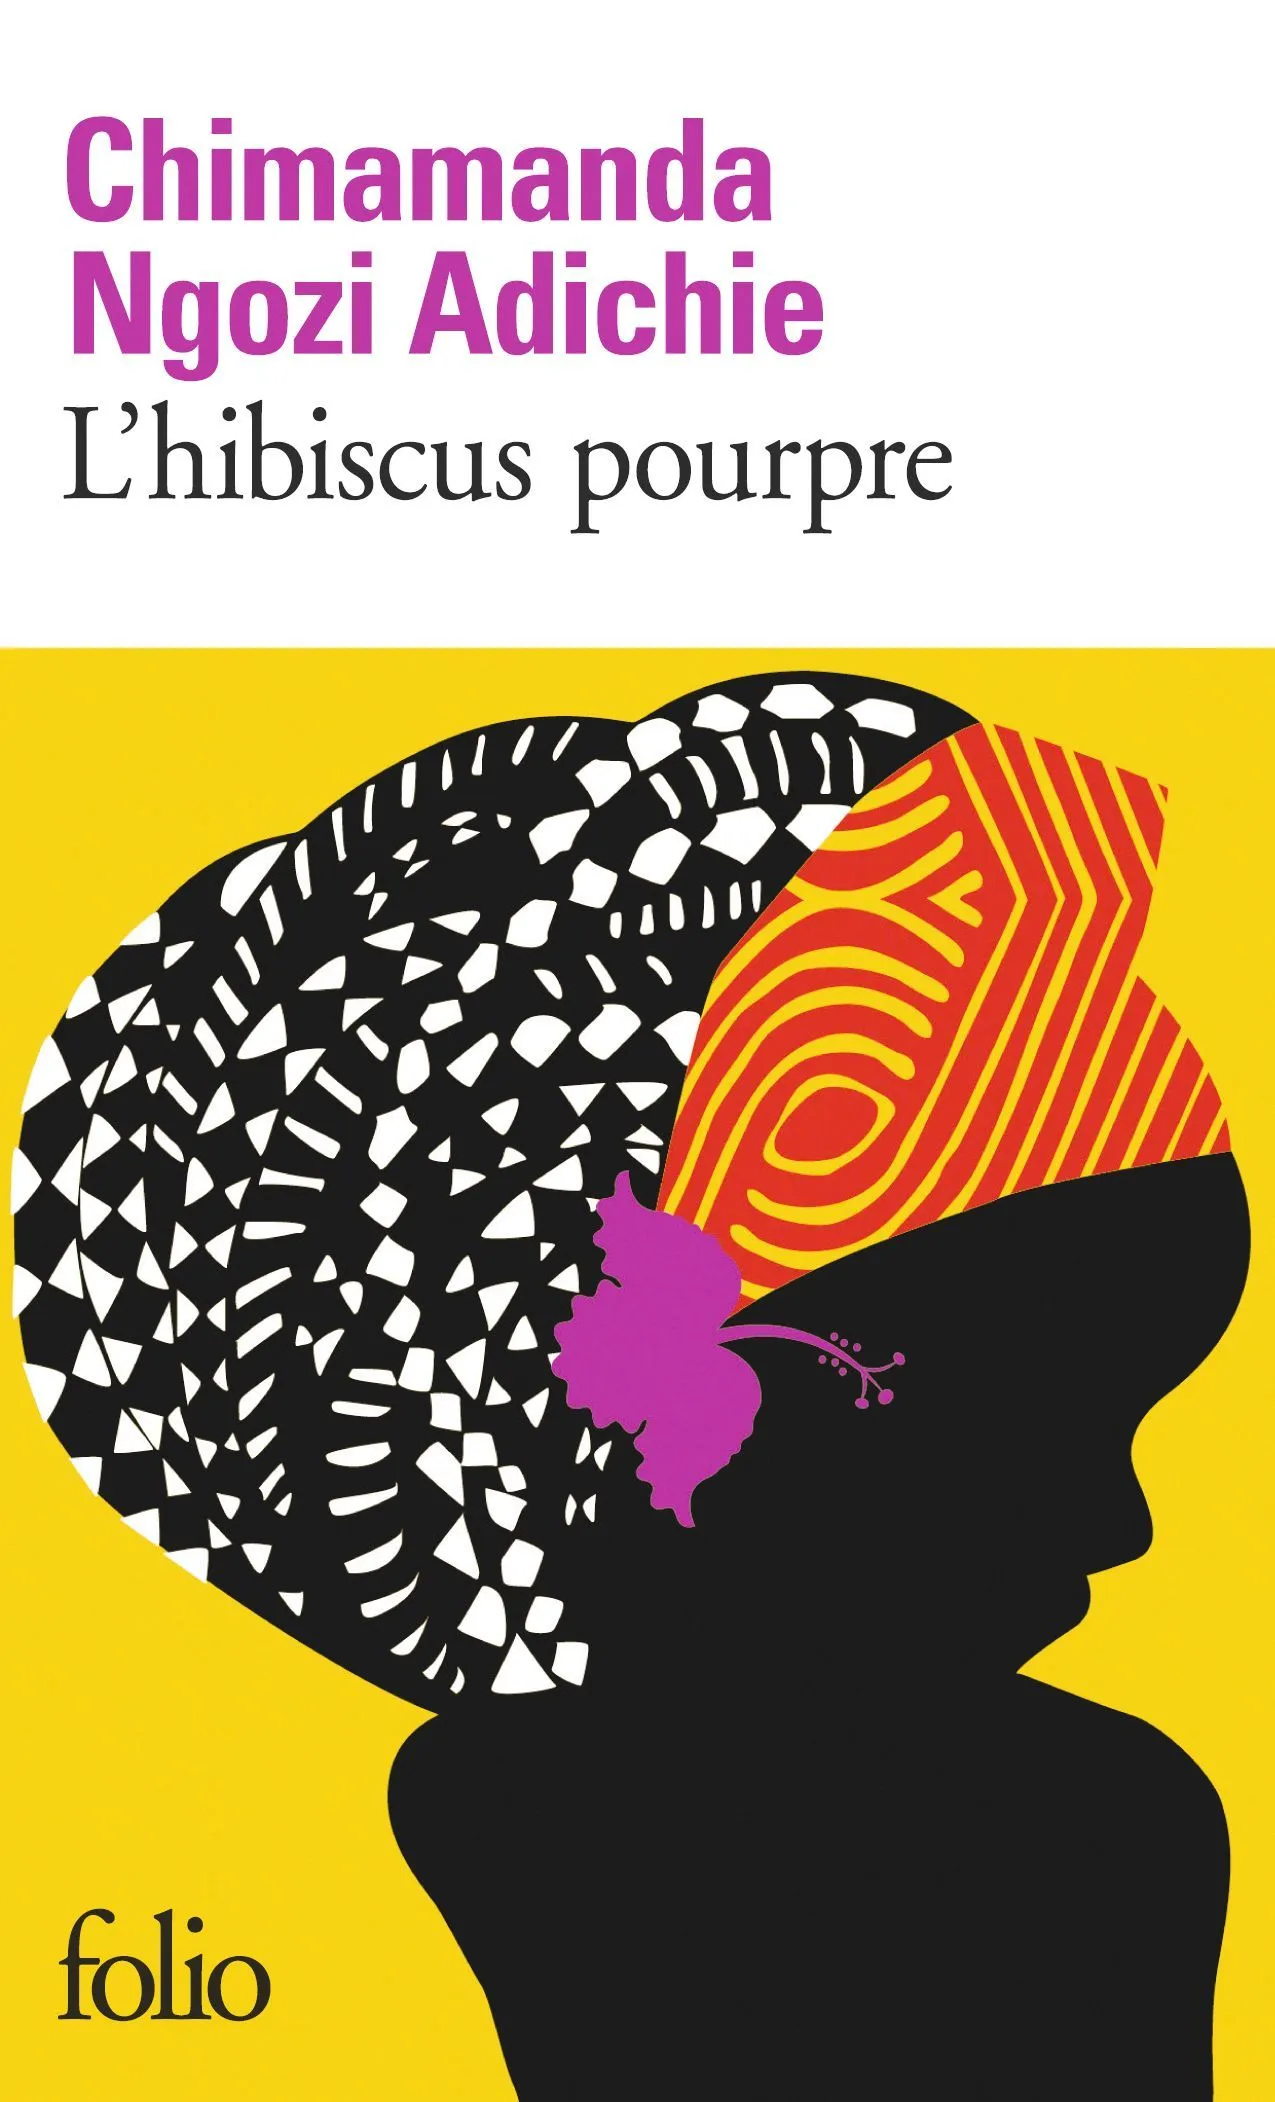 Chimamanda Ngozi Adichie, L'Hibiscus pourpre, 2003, coll. Folio, Gallimard, 2016.